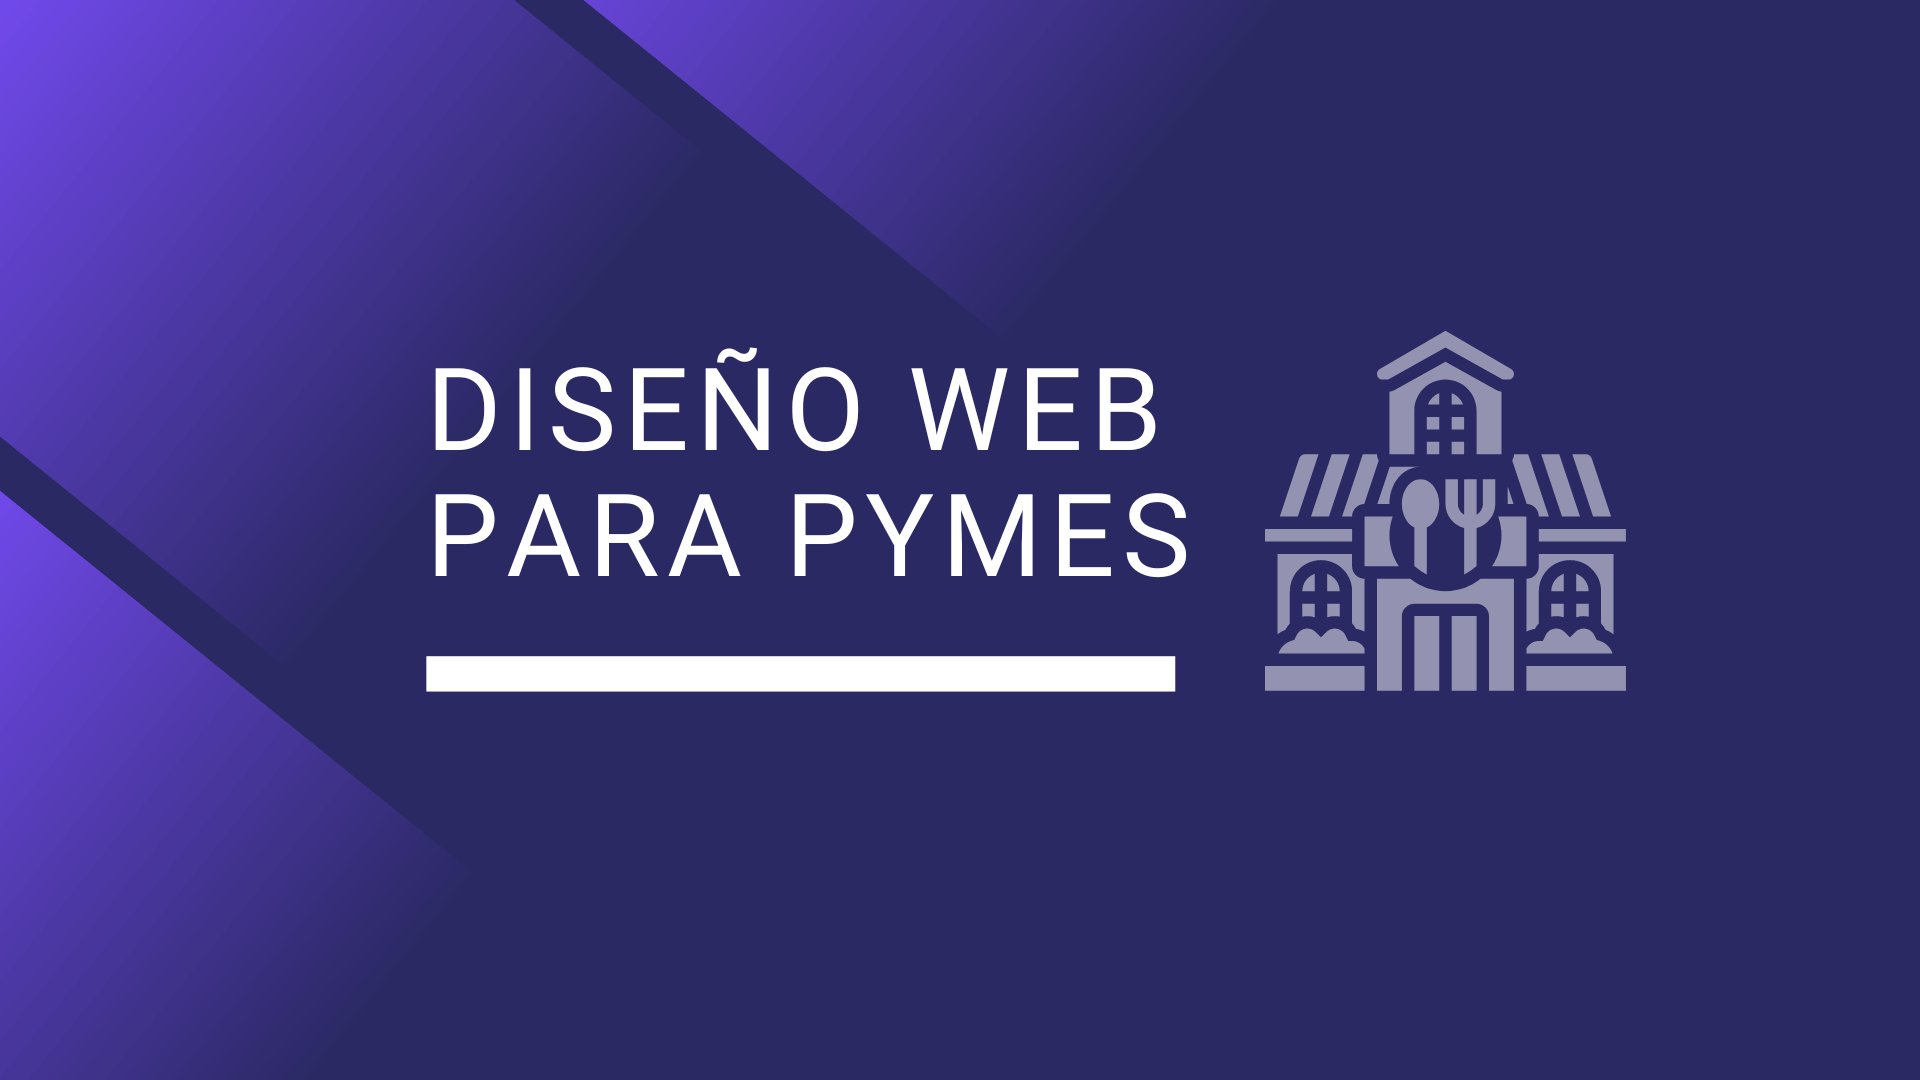 Diseño Web para Pymes